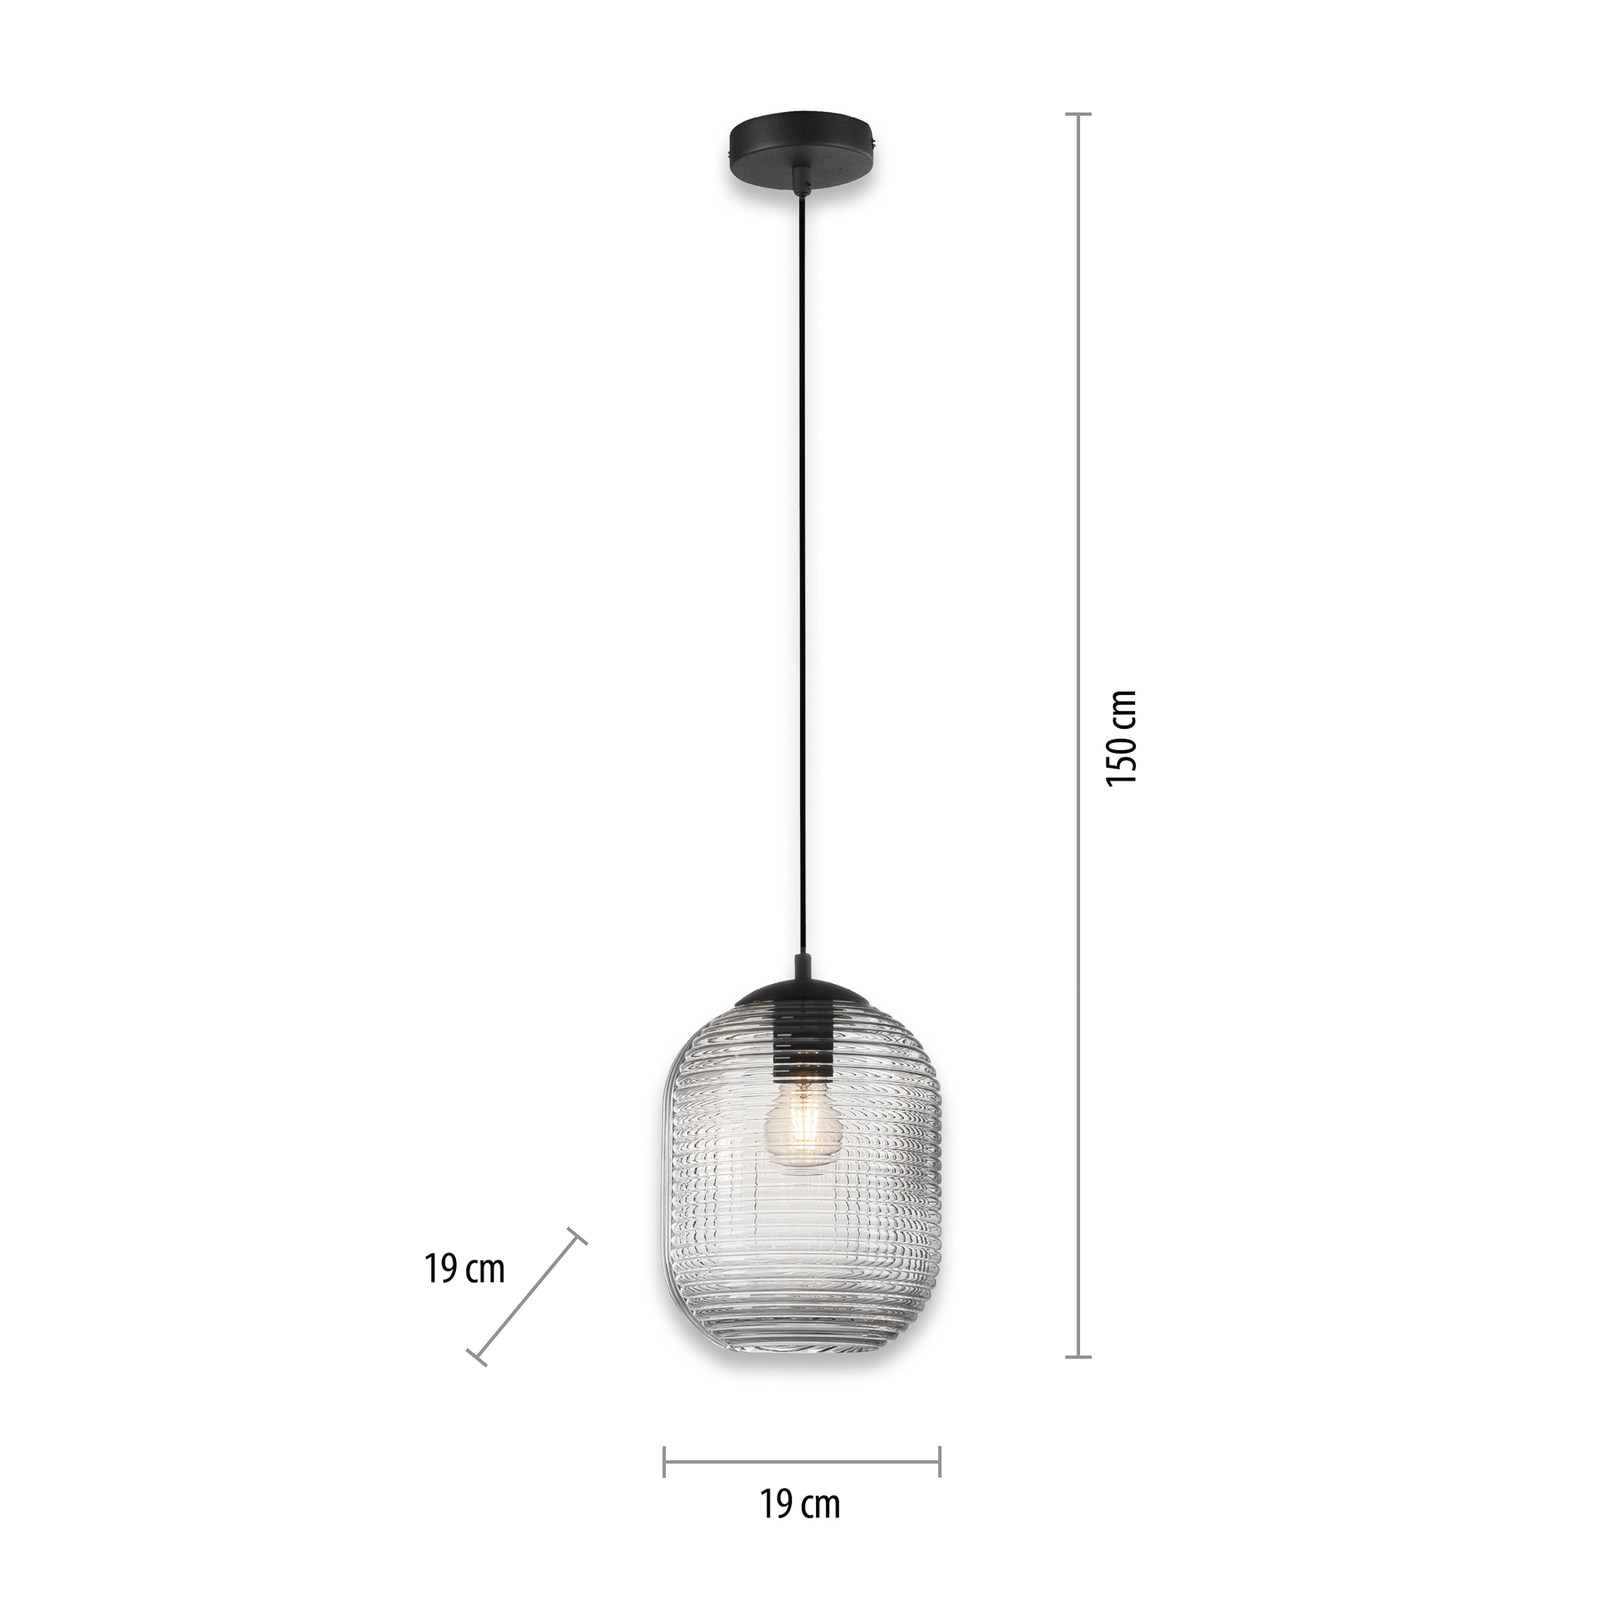 Hanglamp Shitake, 1-lamp, rookgrijs